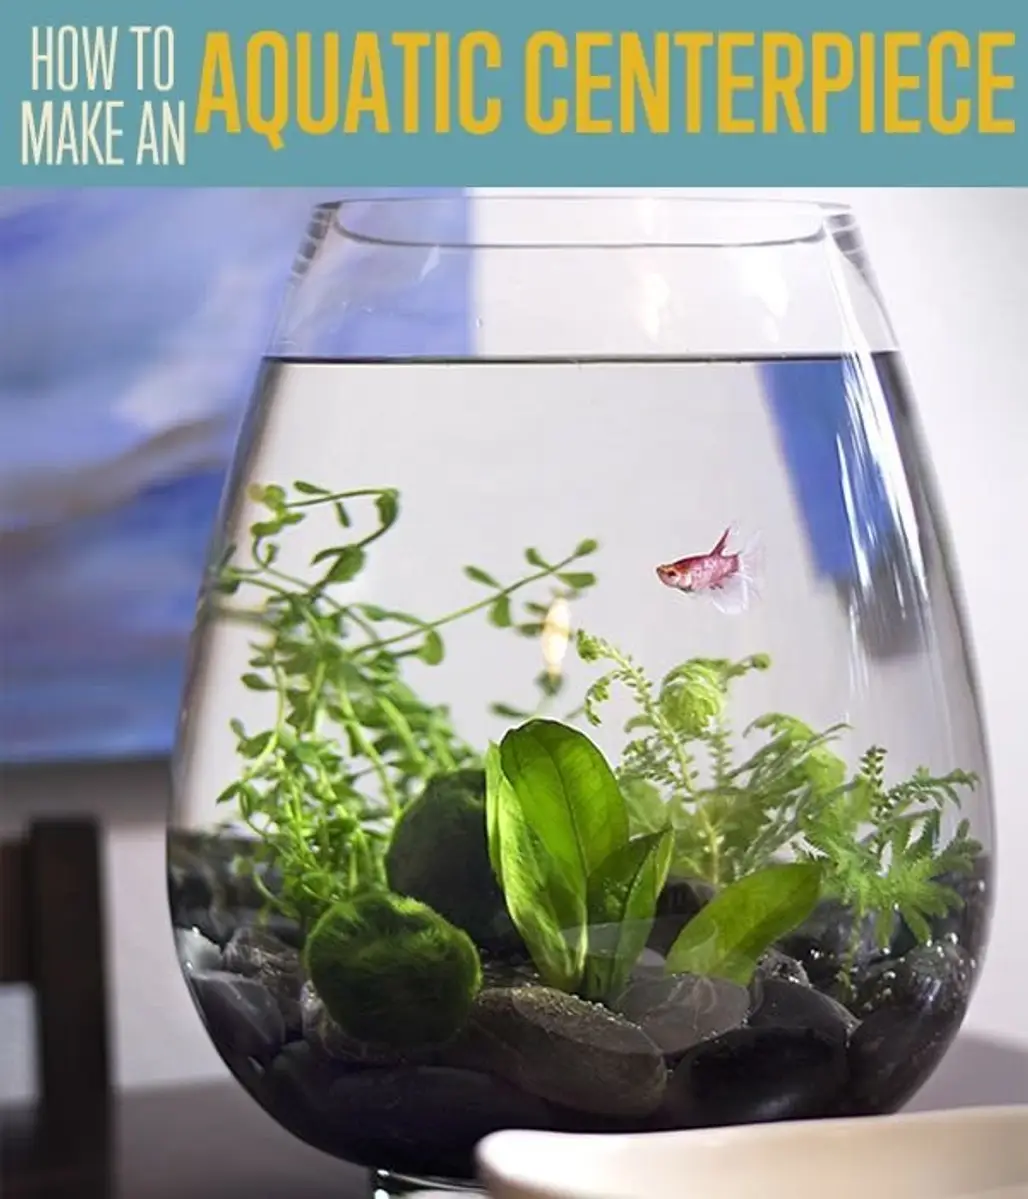 How to Make an Aquatic Centerpiece